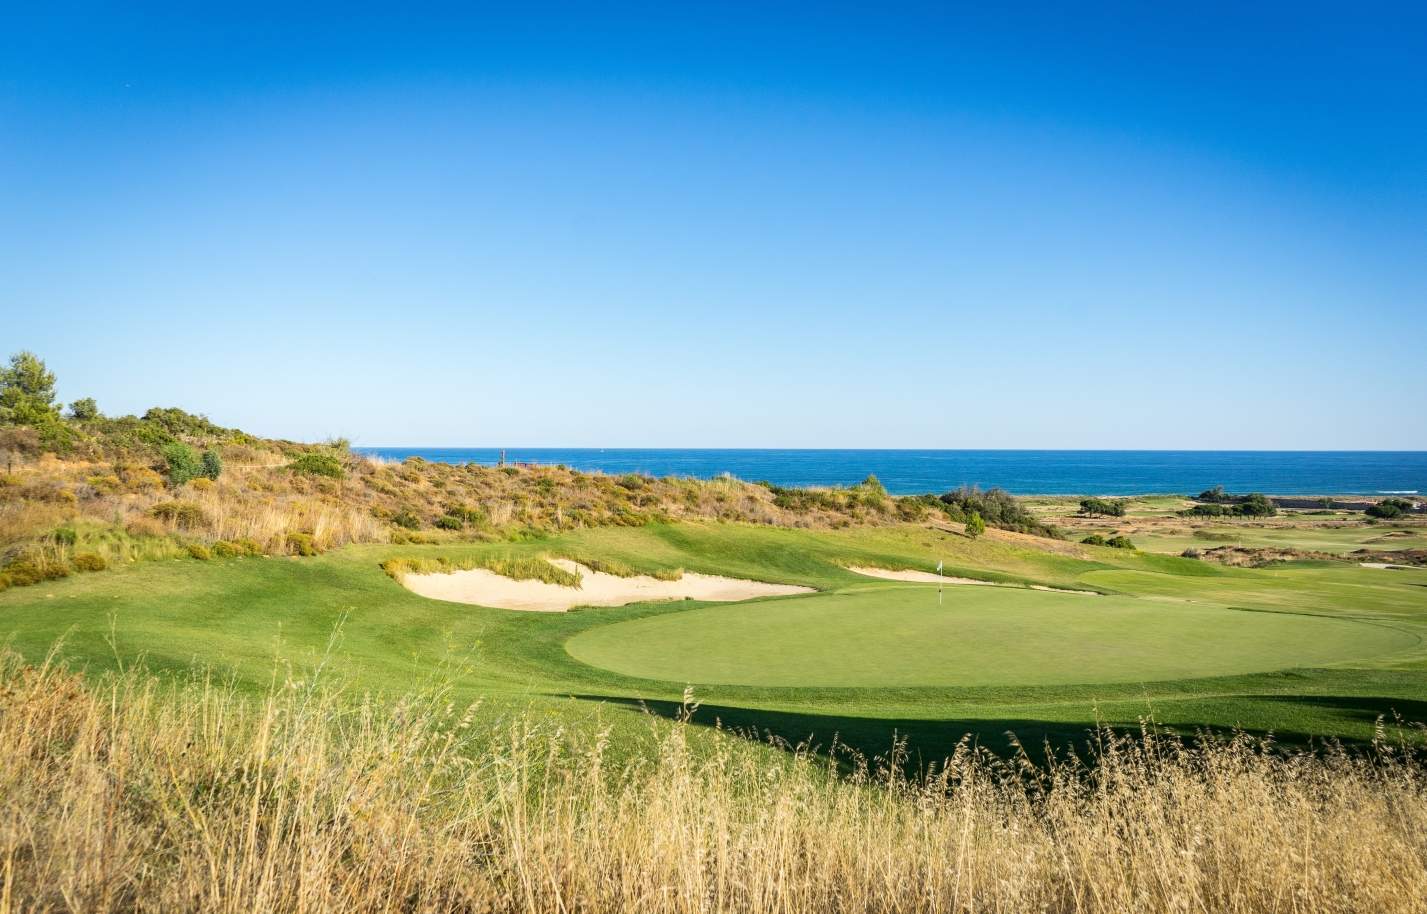 Terrain à vendre dans un complexe de golf, Lagos, Algarve, Portugal_122999